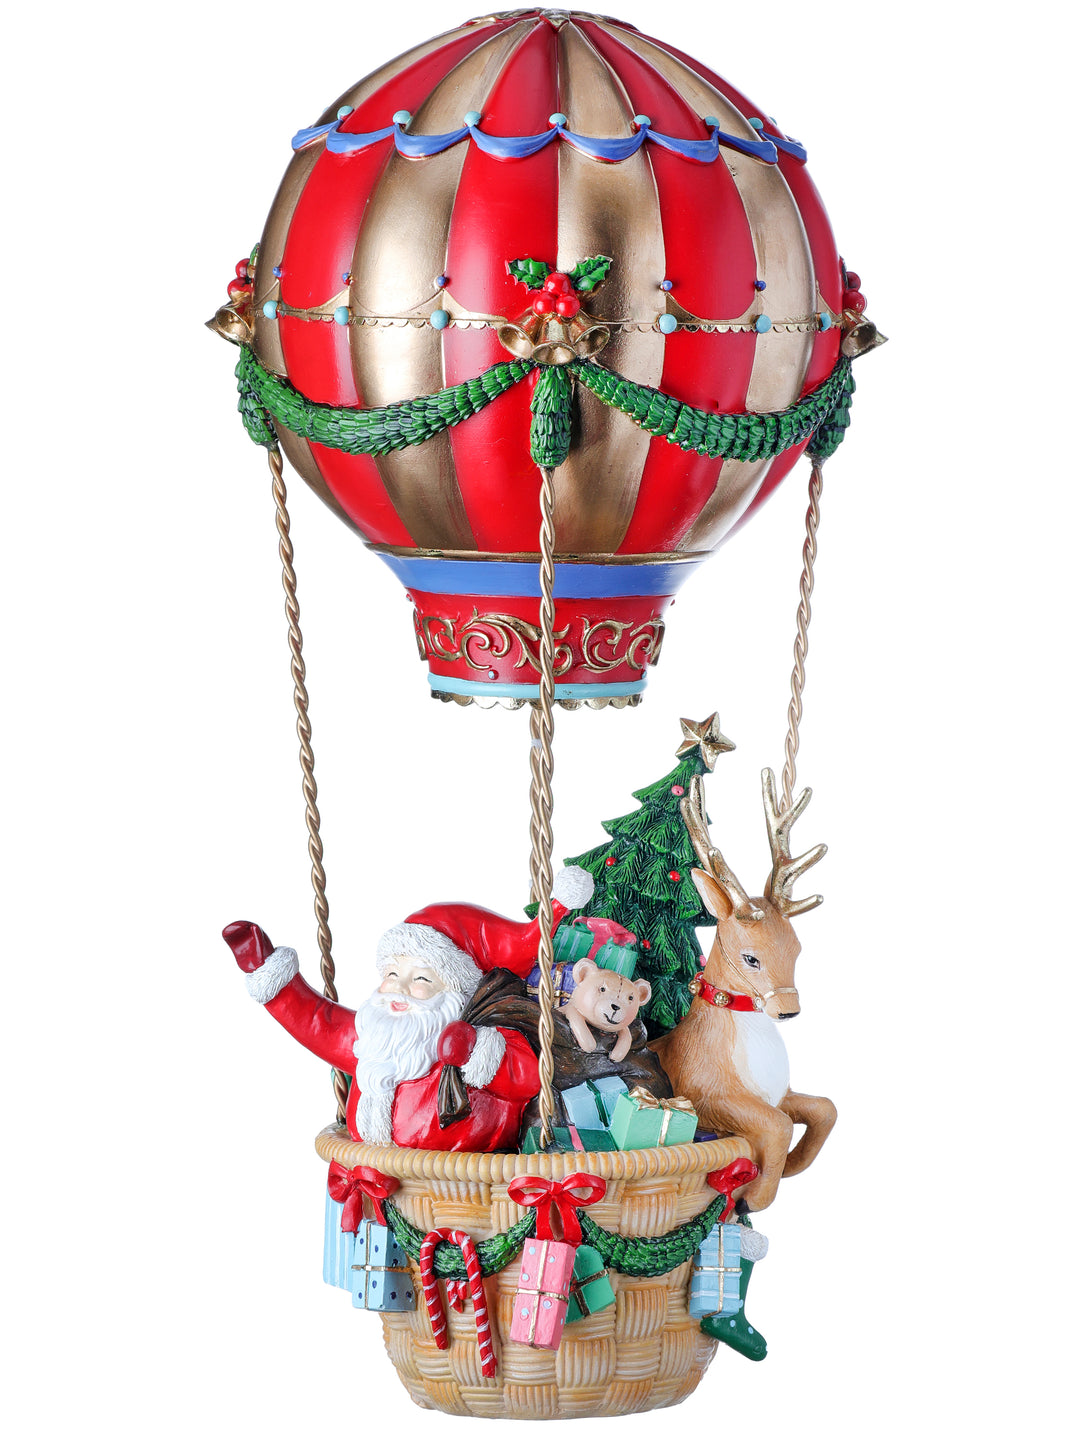 17” Resin Santa Hot Air Balloon Decor